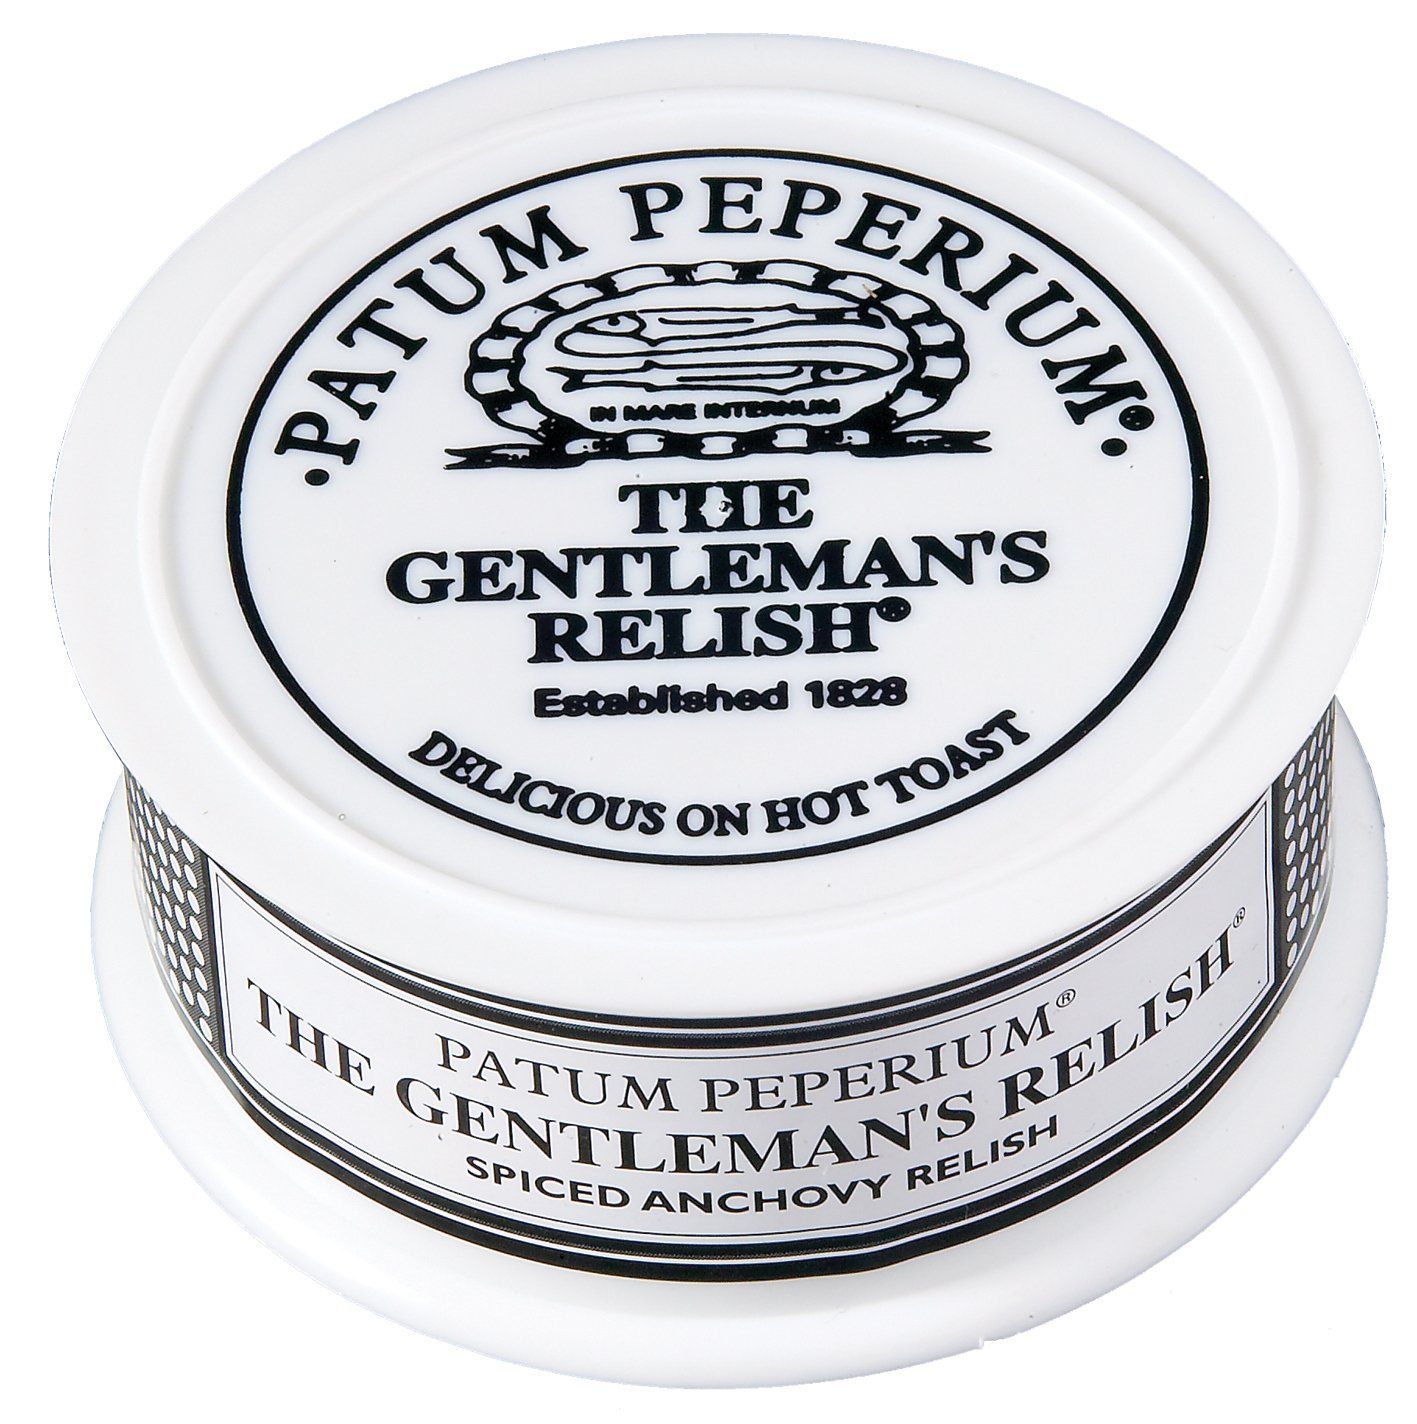 Patum Peperium Gentlemans Relish Pates